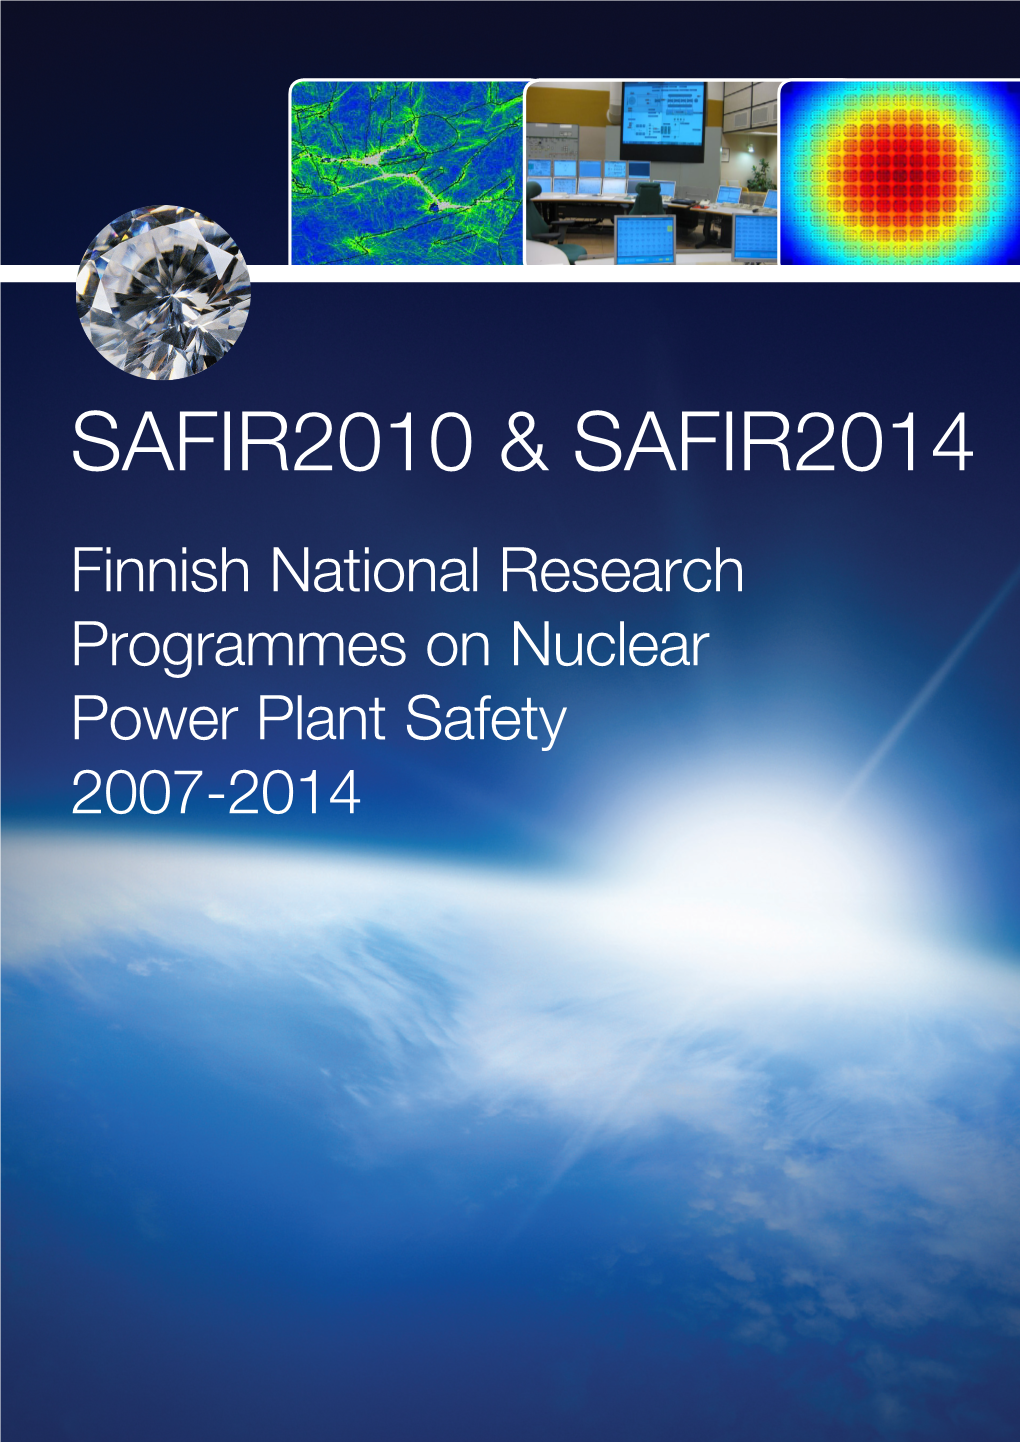 SAFIR2010 & SAFIR2014 Brochure